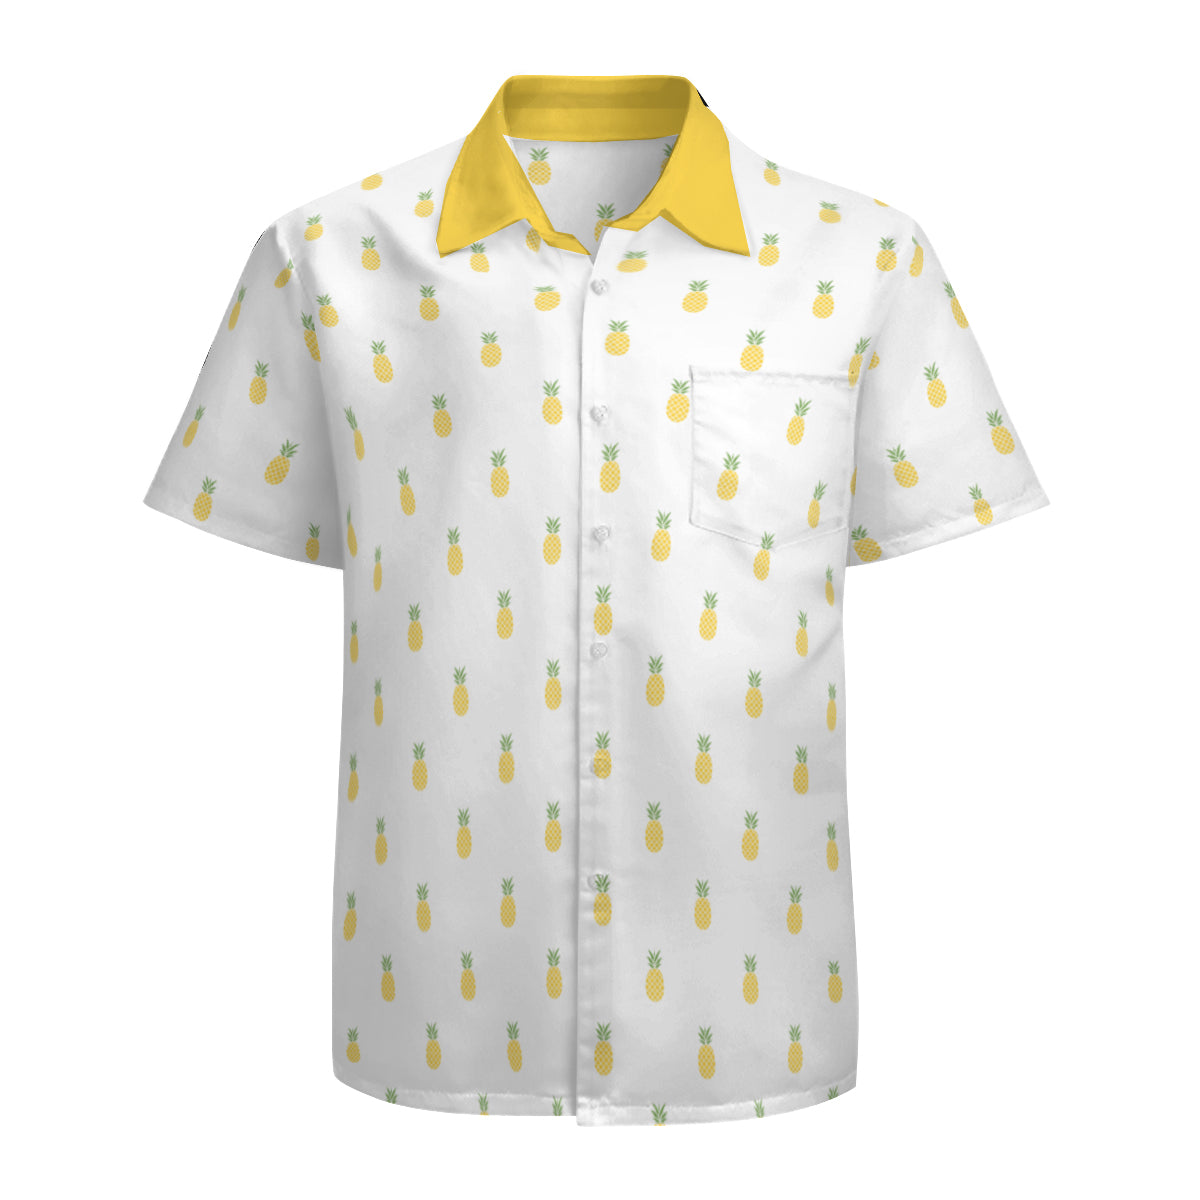 Pineapple Shirt Men, Retro Hawaiian Shirt Men, 60s Style Top Men, Retro Shirt , Tropical Shirt Men, Vintage Style Shirt , Pineapple Top men